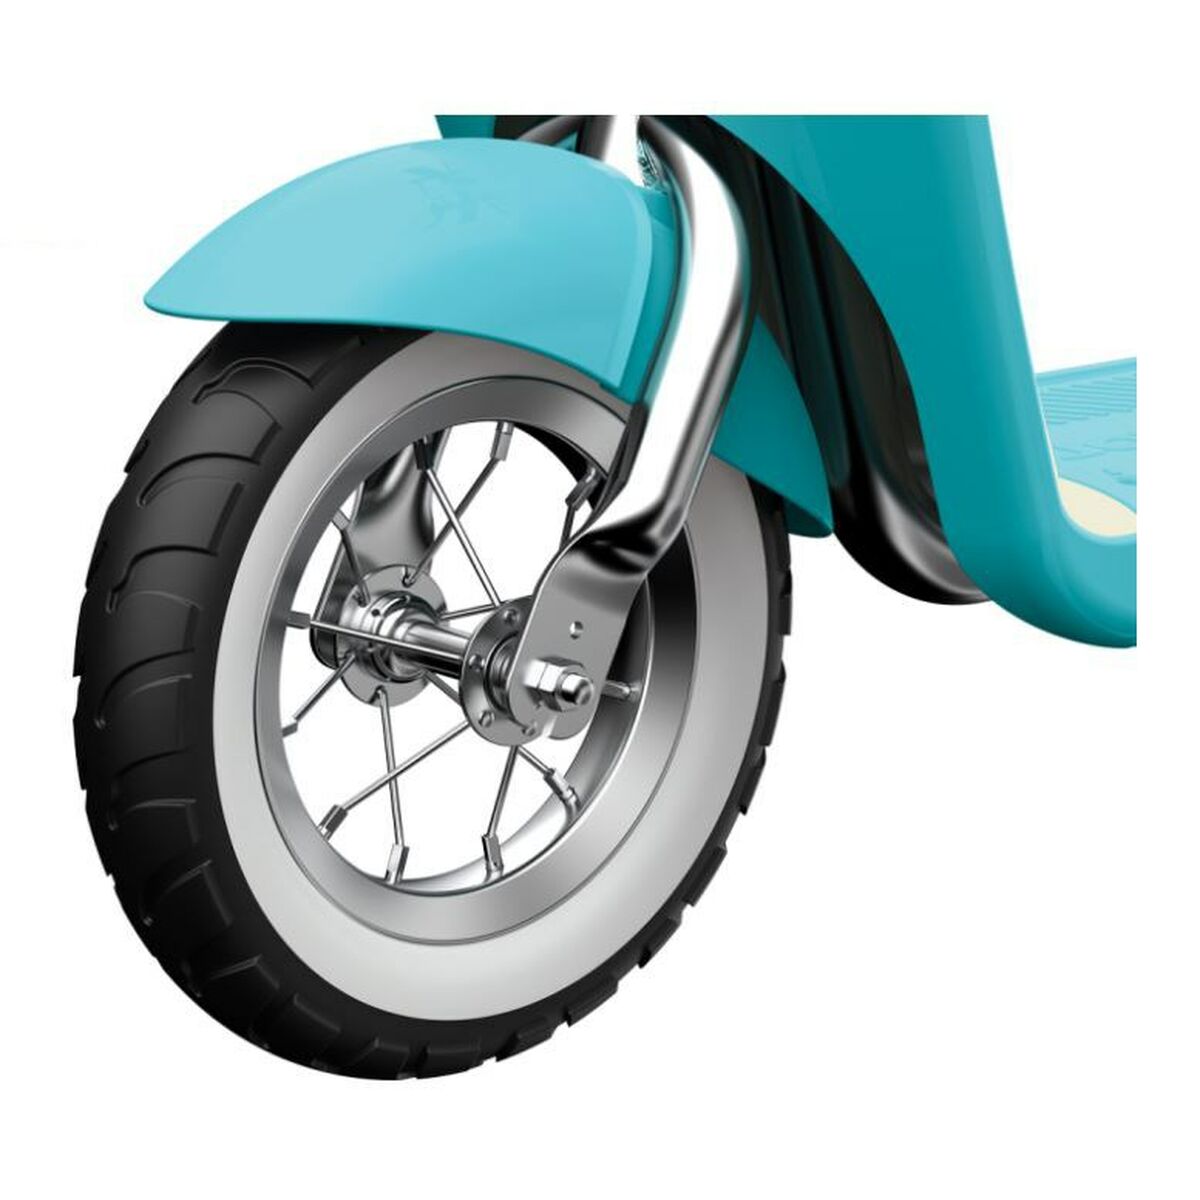 Motocyclette Razor MX125 Dirt Rocket 105 x 55 x 46 cm